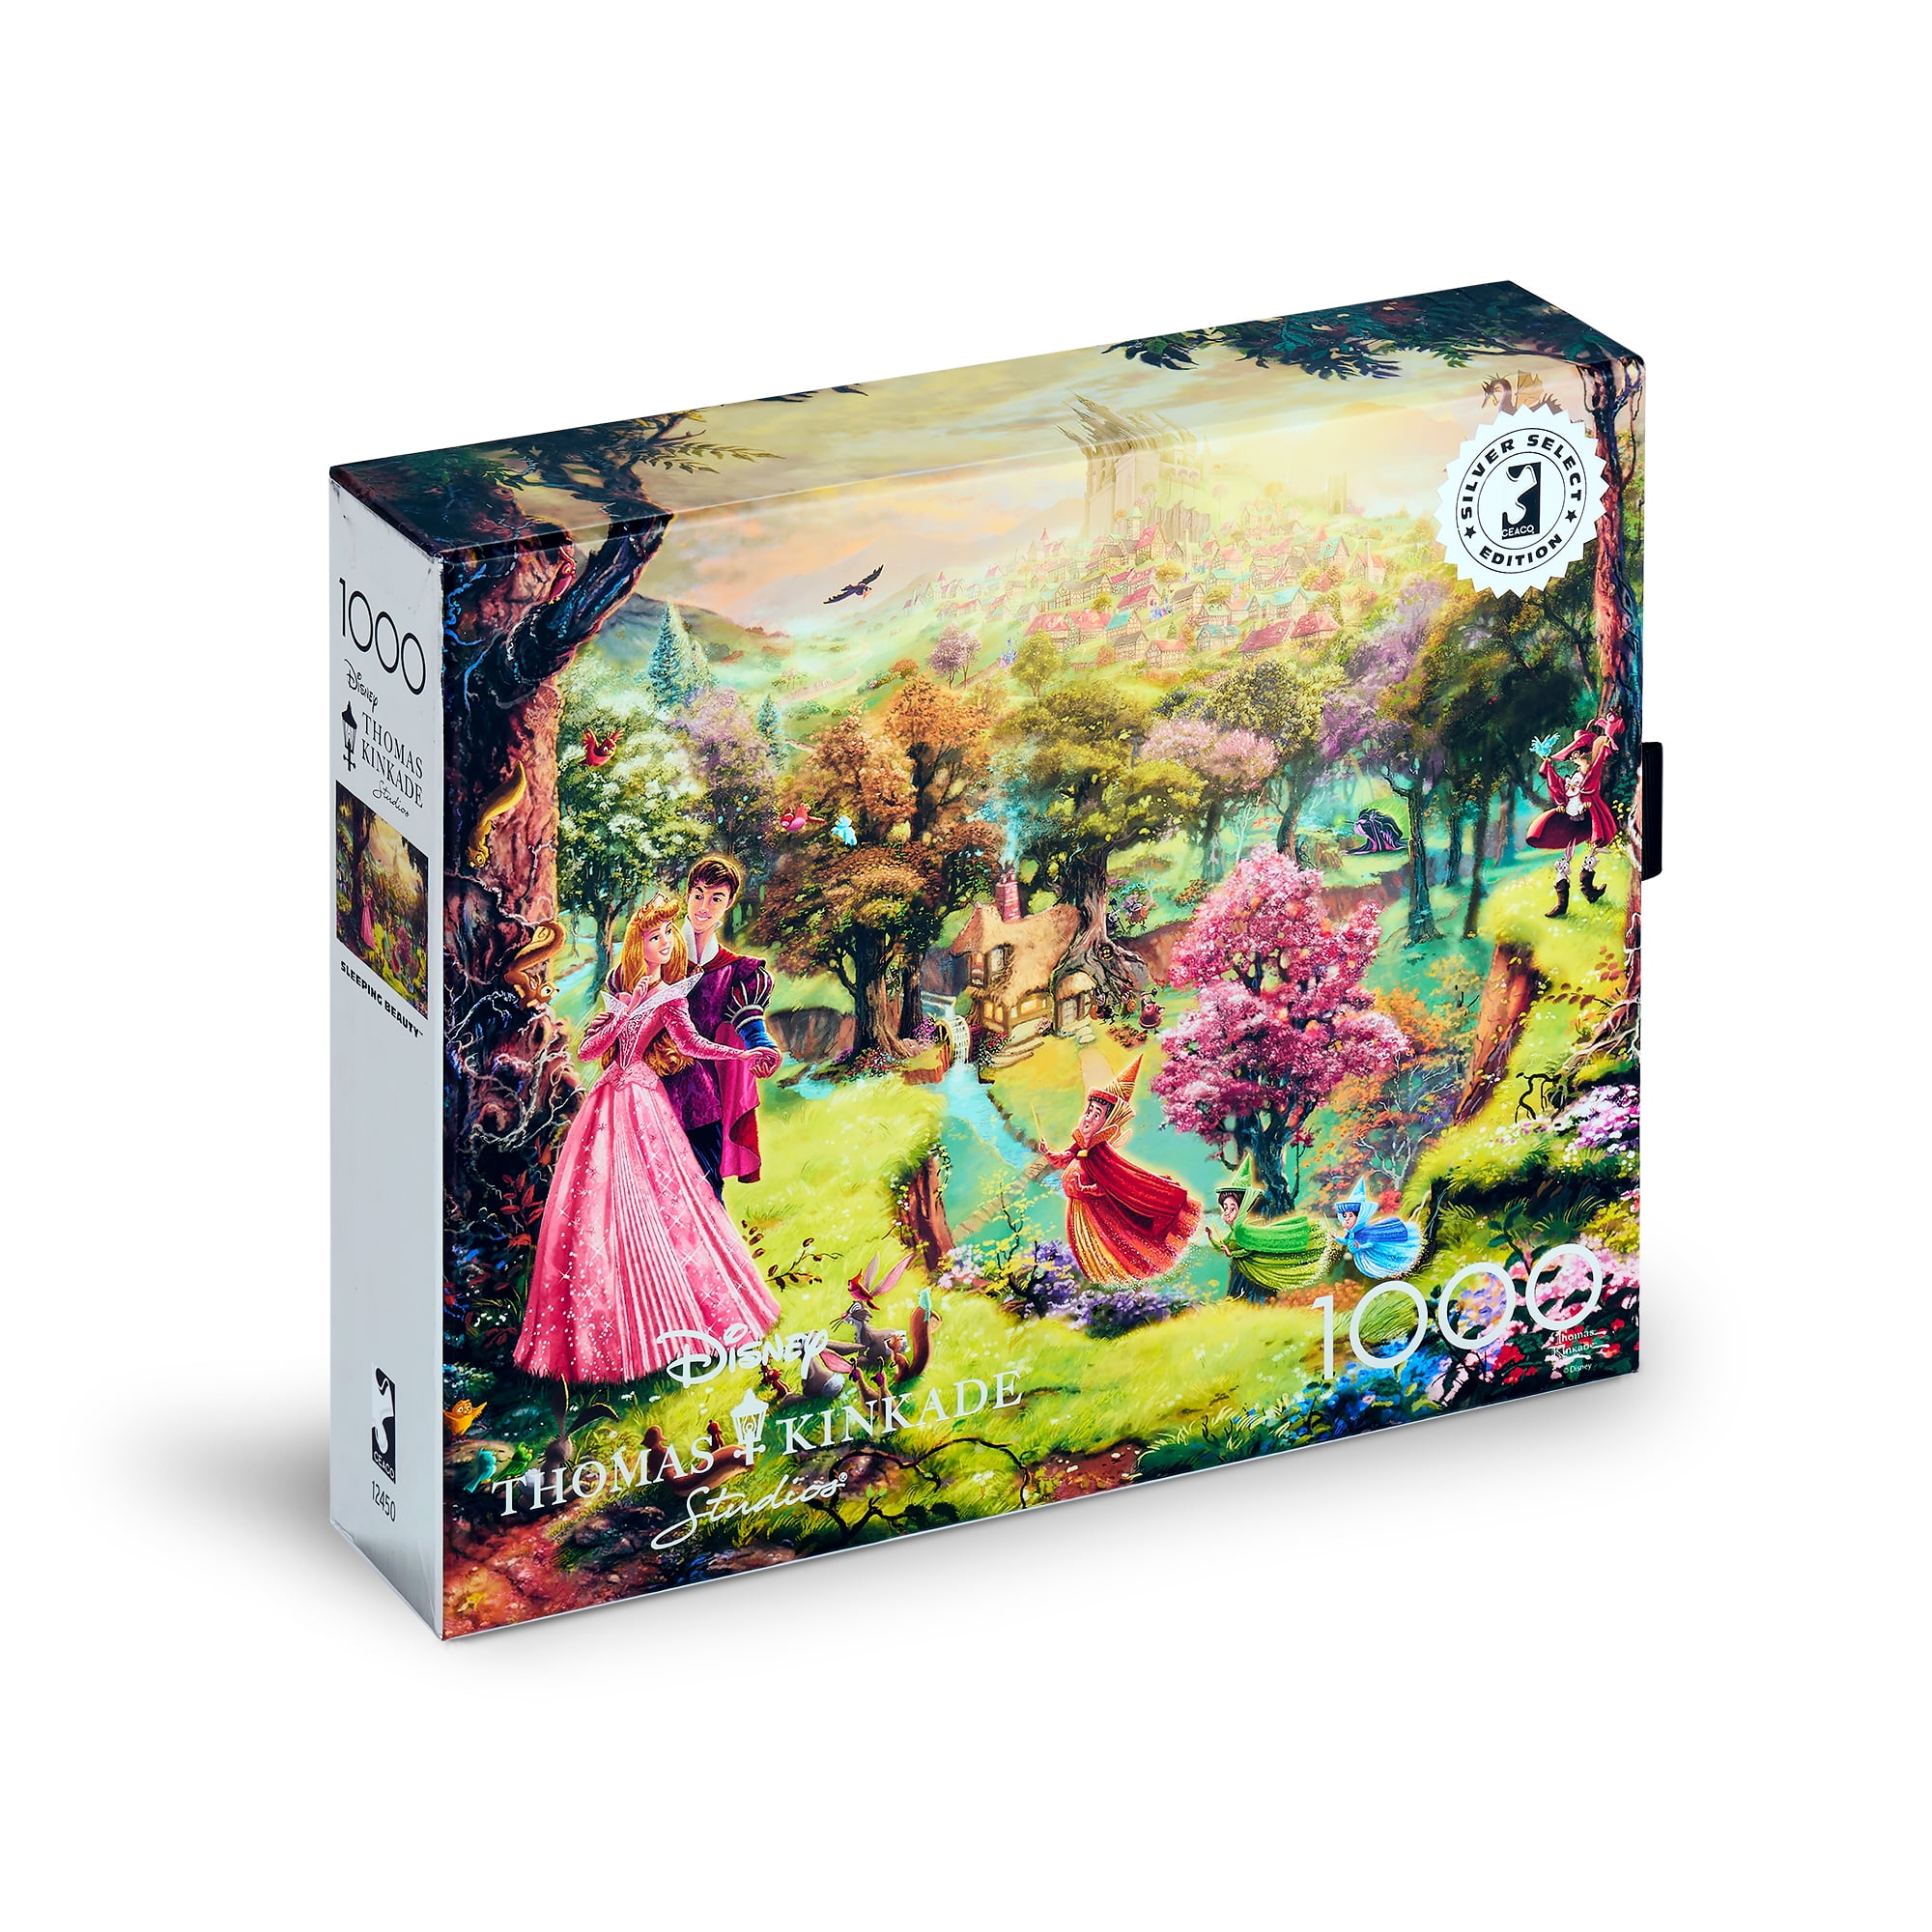 Schmidt Spiele Thomas Kinkade: Disney - Sleeping Beauty Jigsaw Puzzle  (1000Pc)